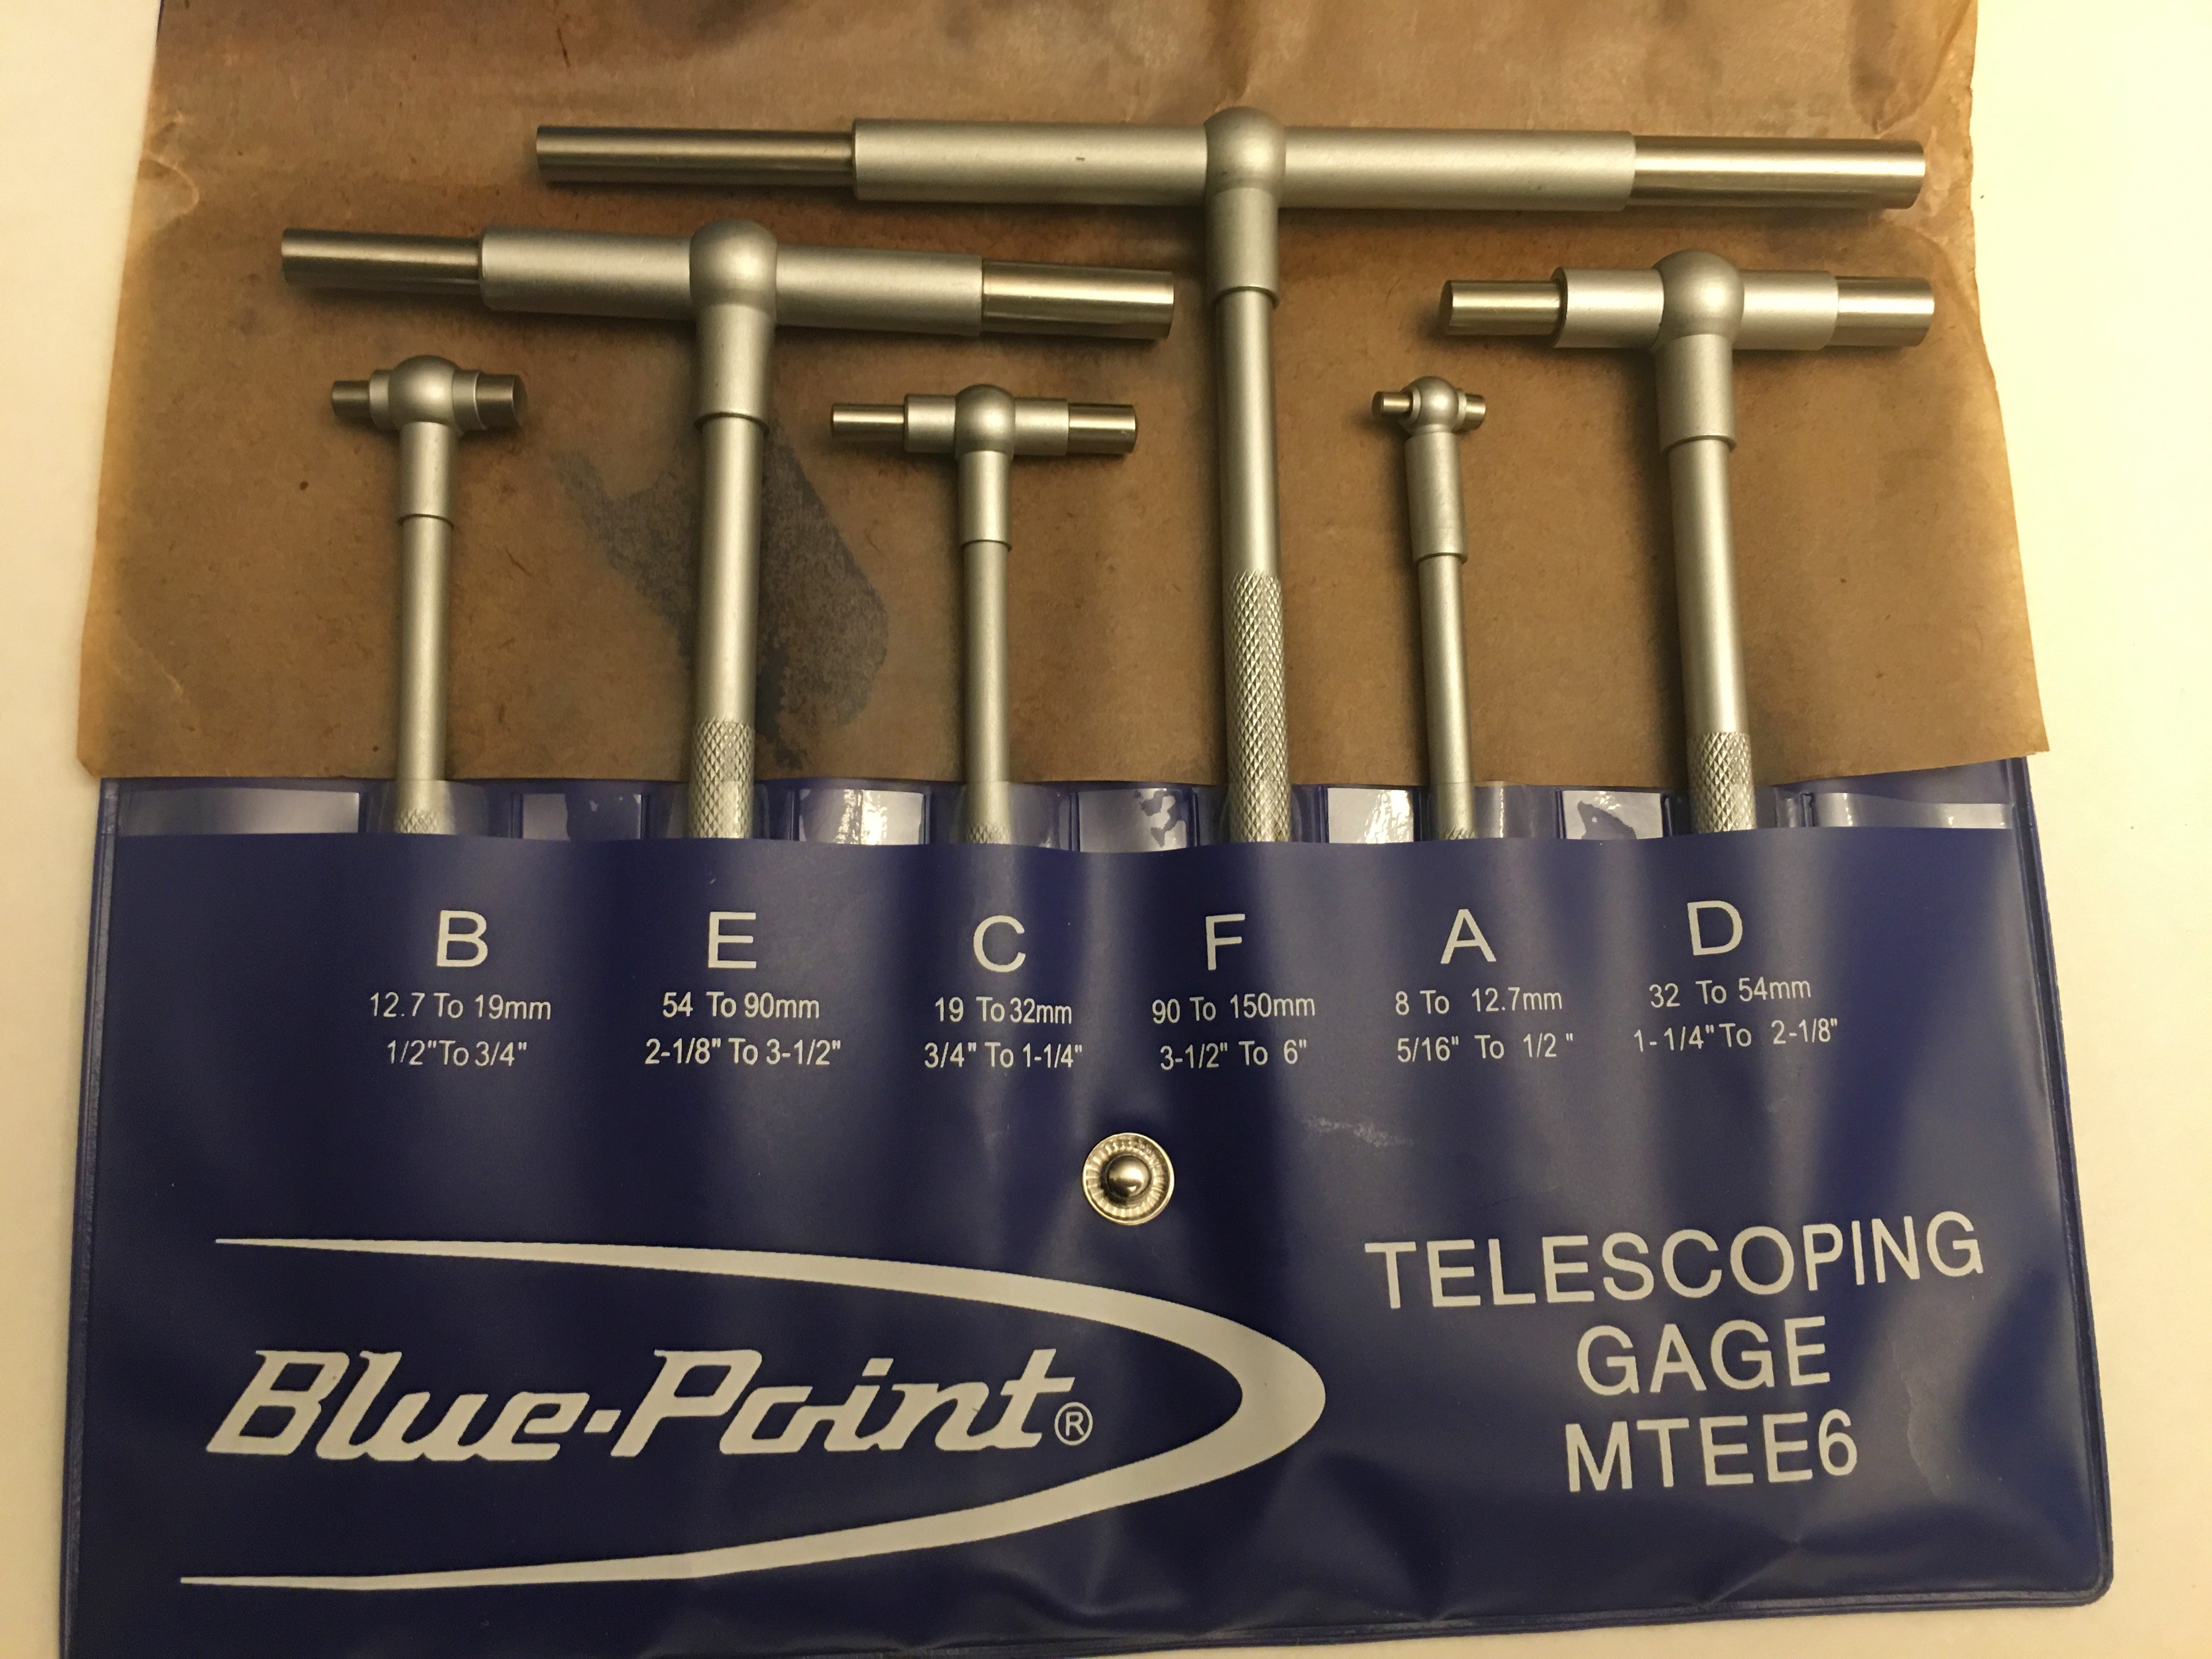 Bluepoint Telescoping Gauges set 5/16"-6" / 8mm-150mm